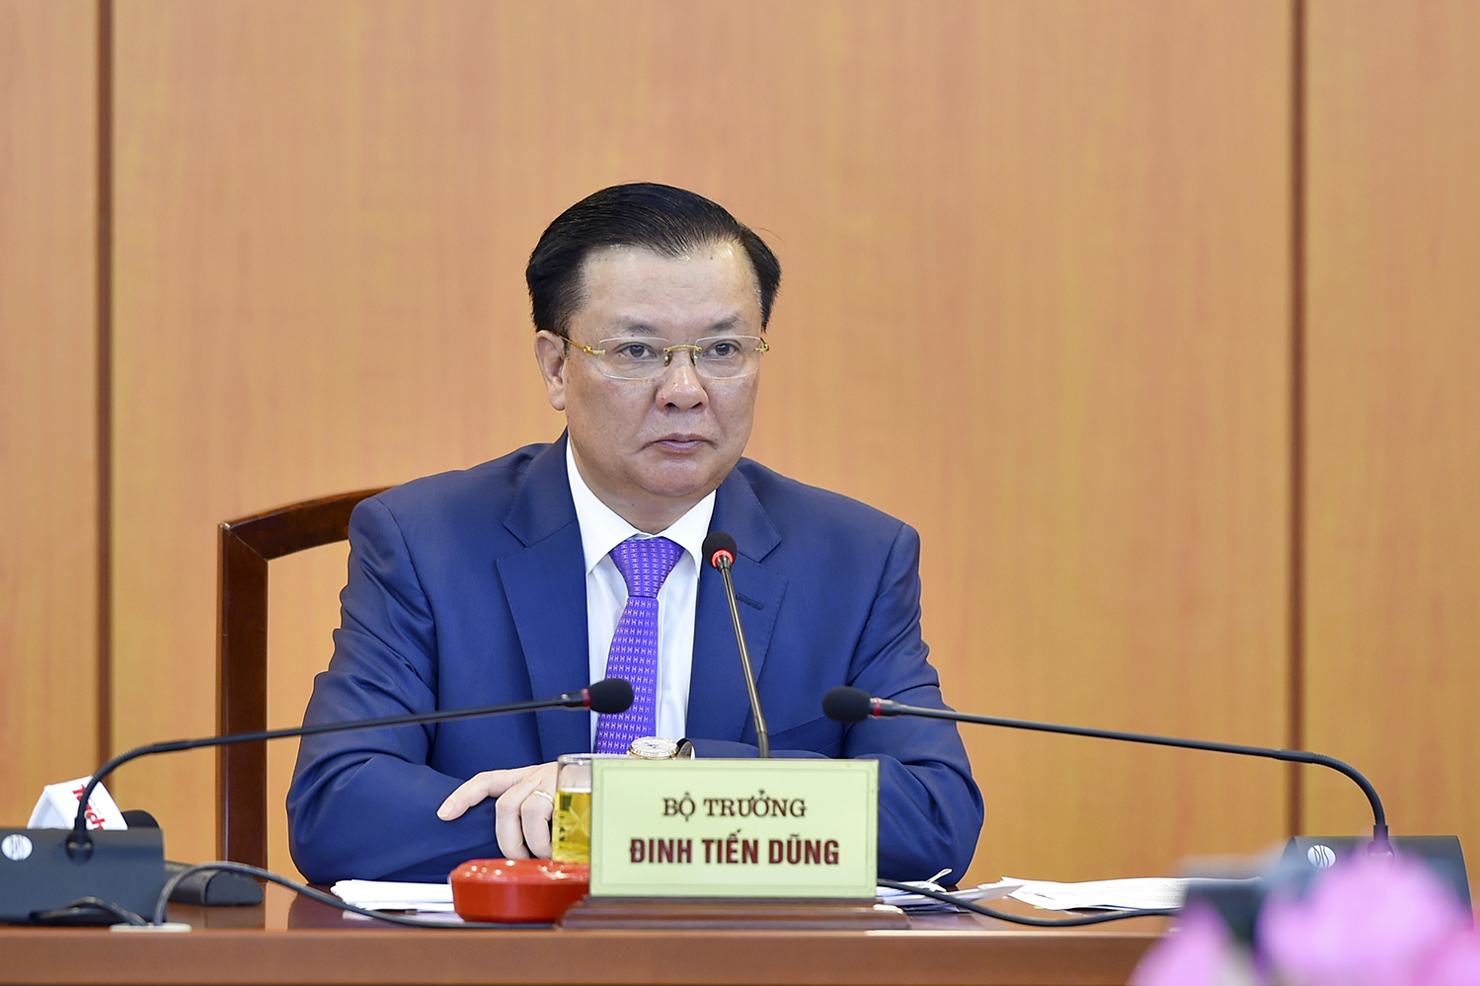 Bộ trưởng Bộ Tài chính Đinh Tiến Dũng  tại Hội nghị trực tuyến đánh giá công tác quản lý thu NSNN năm 2018, giải pháp chống thất thu, xử lý nợ đọng thuế, ngày 18/10/2018.